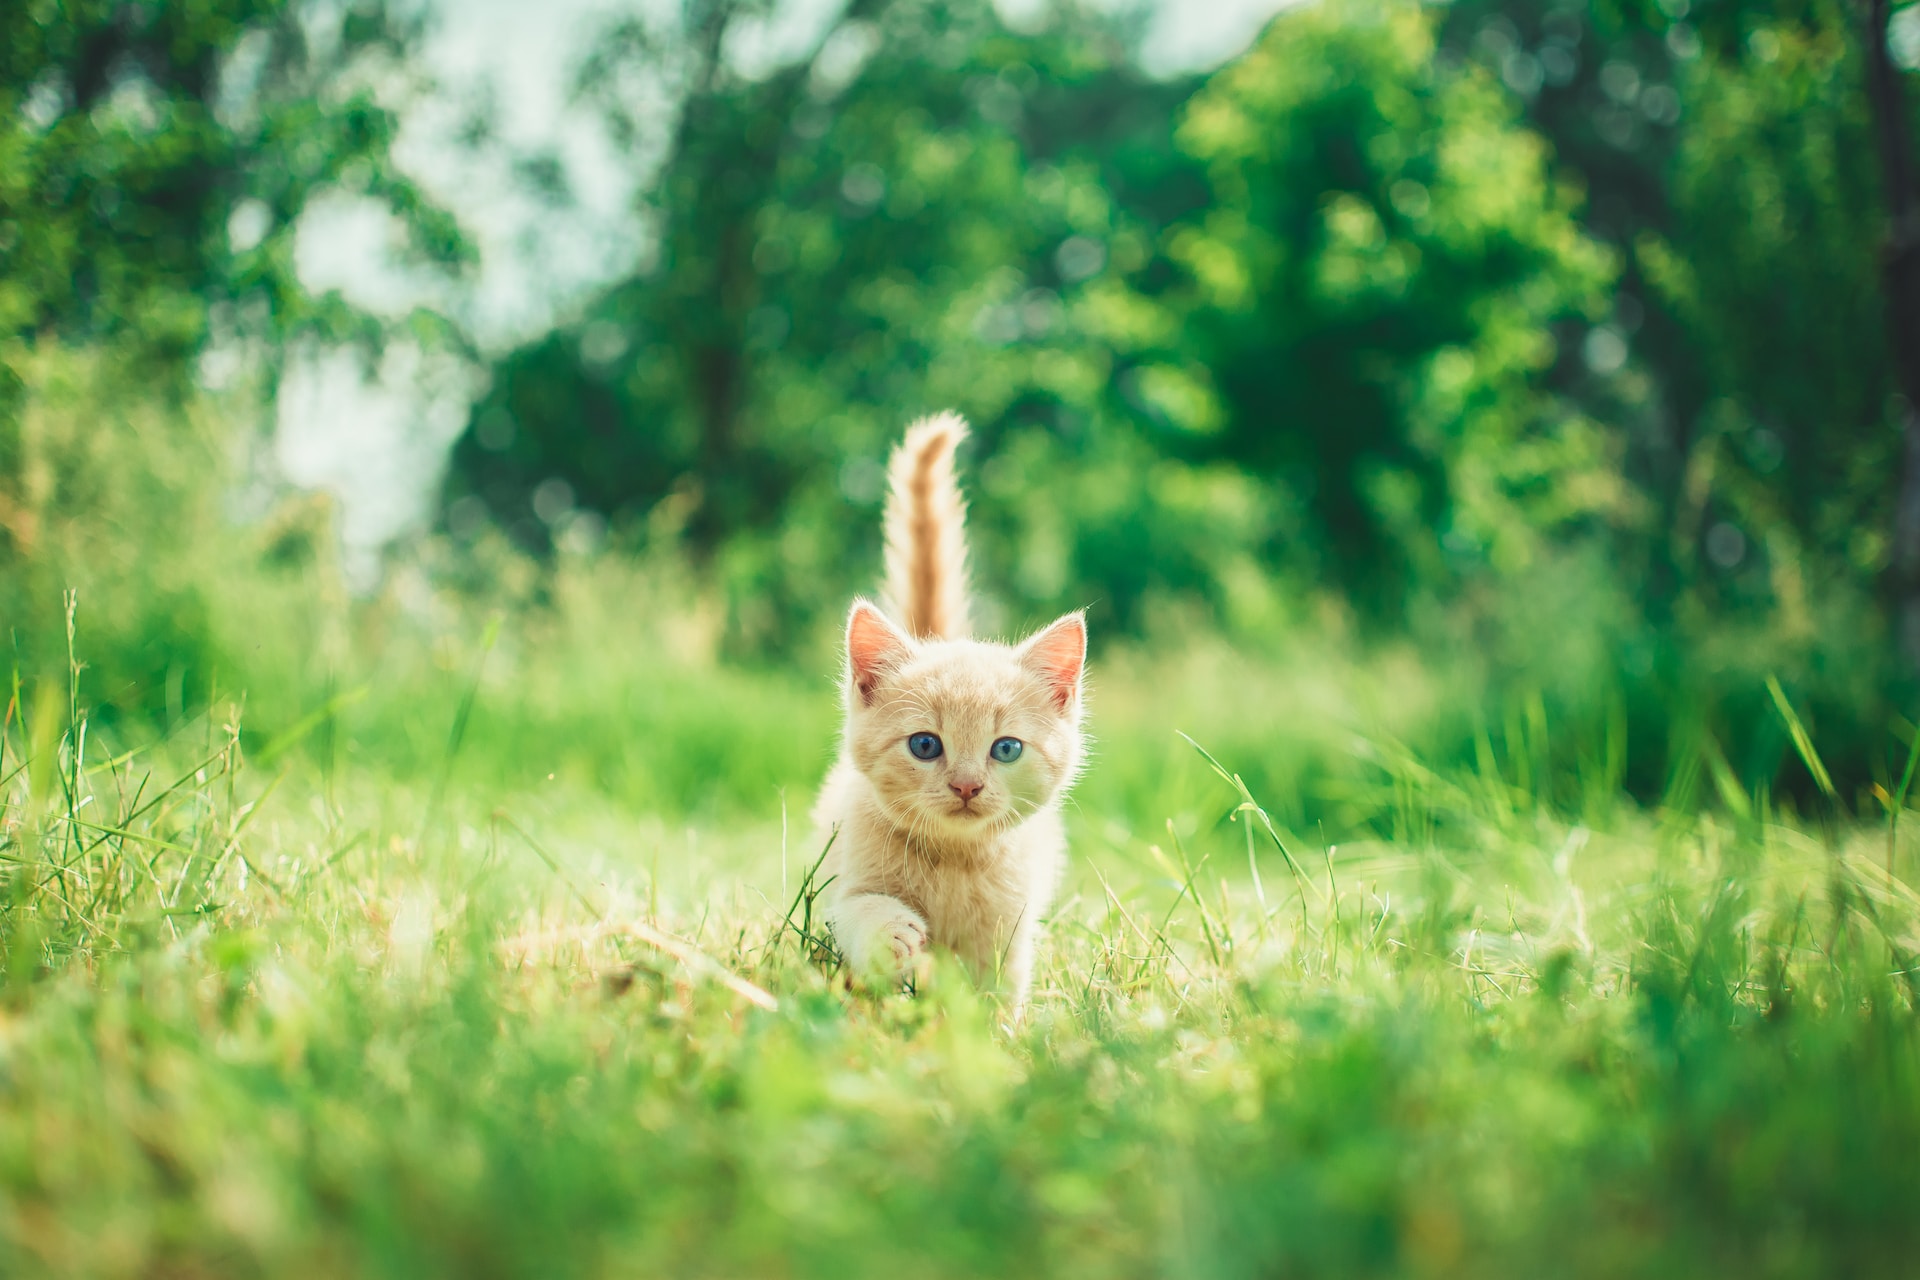 cat walking through grass